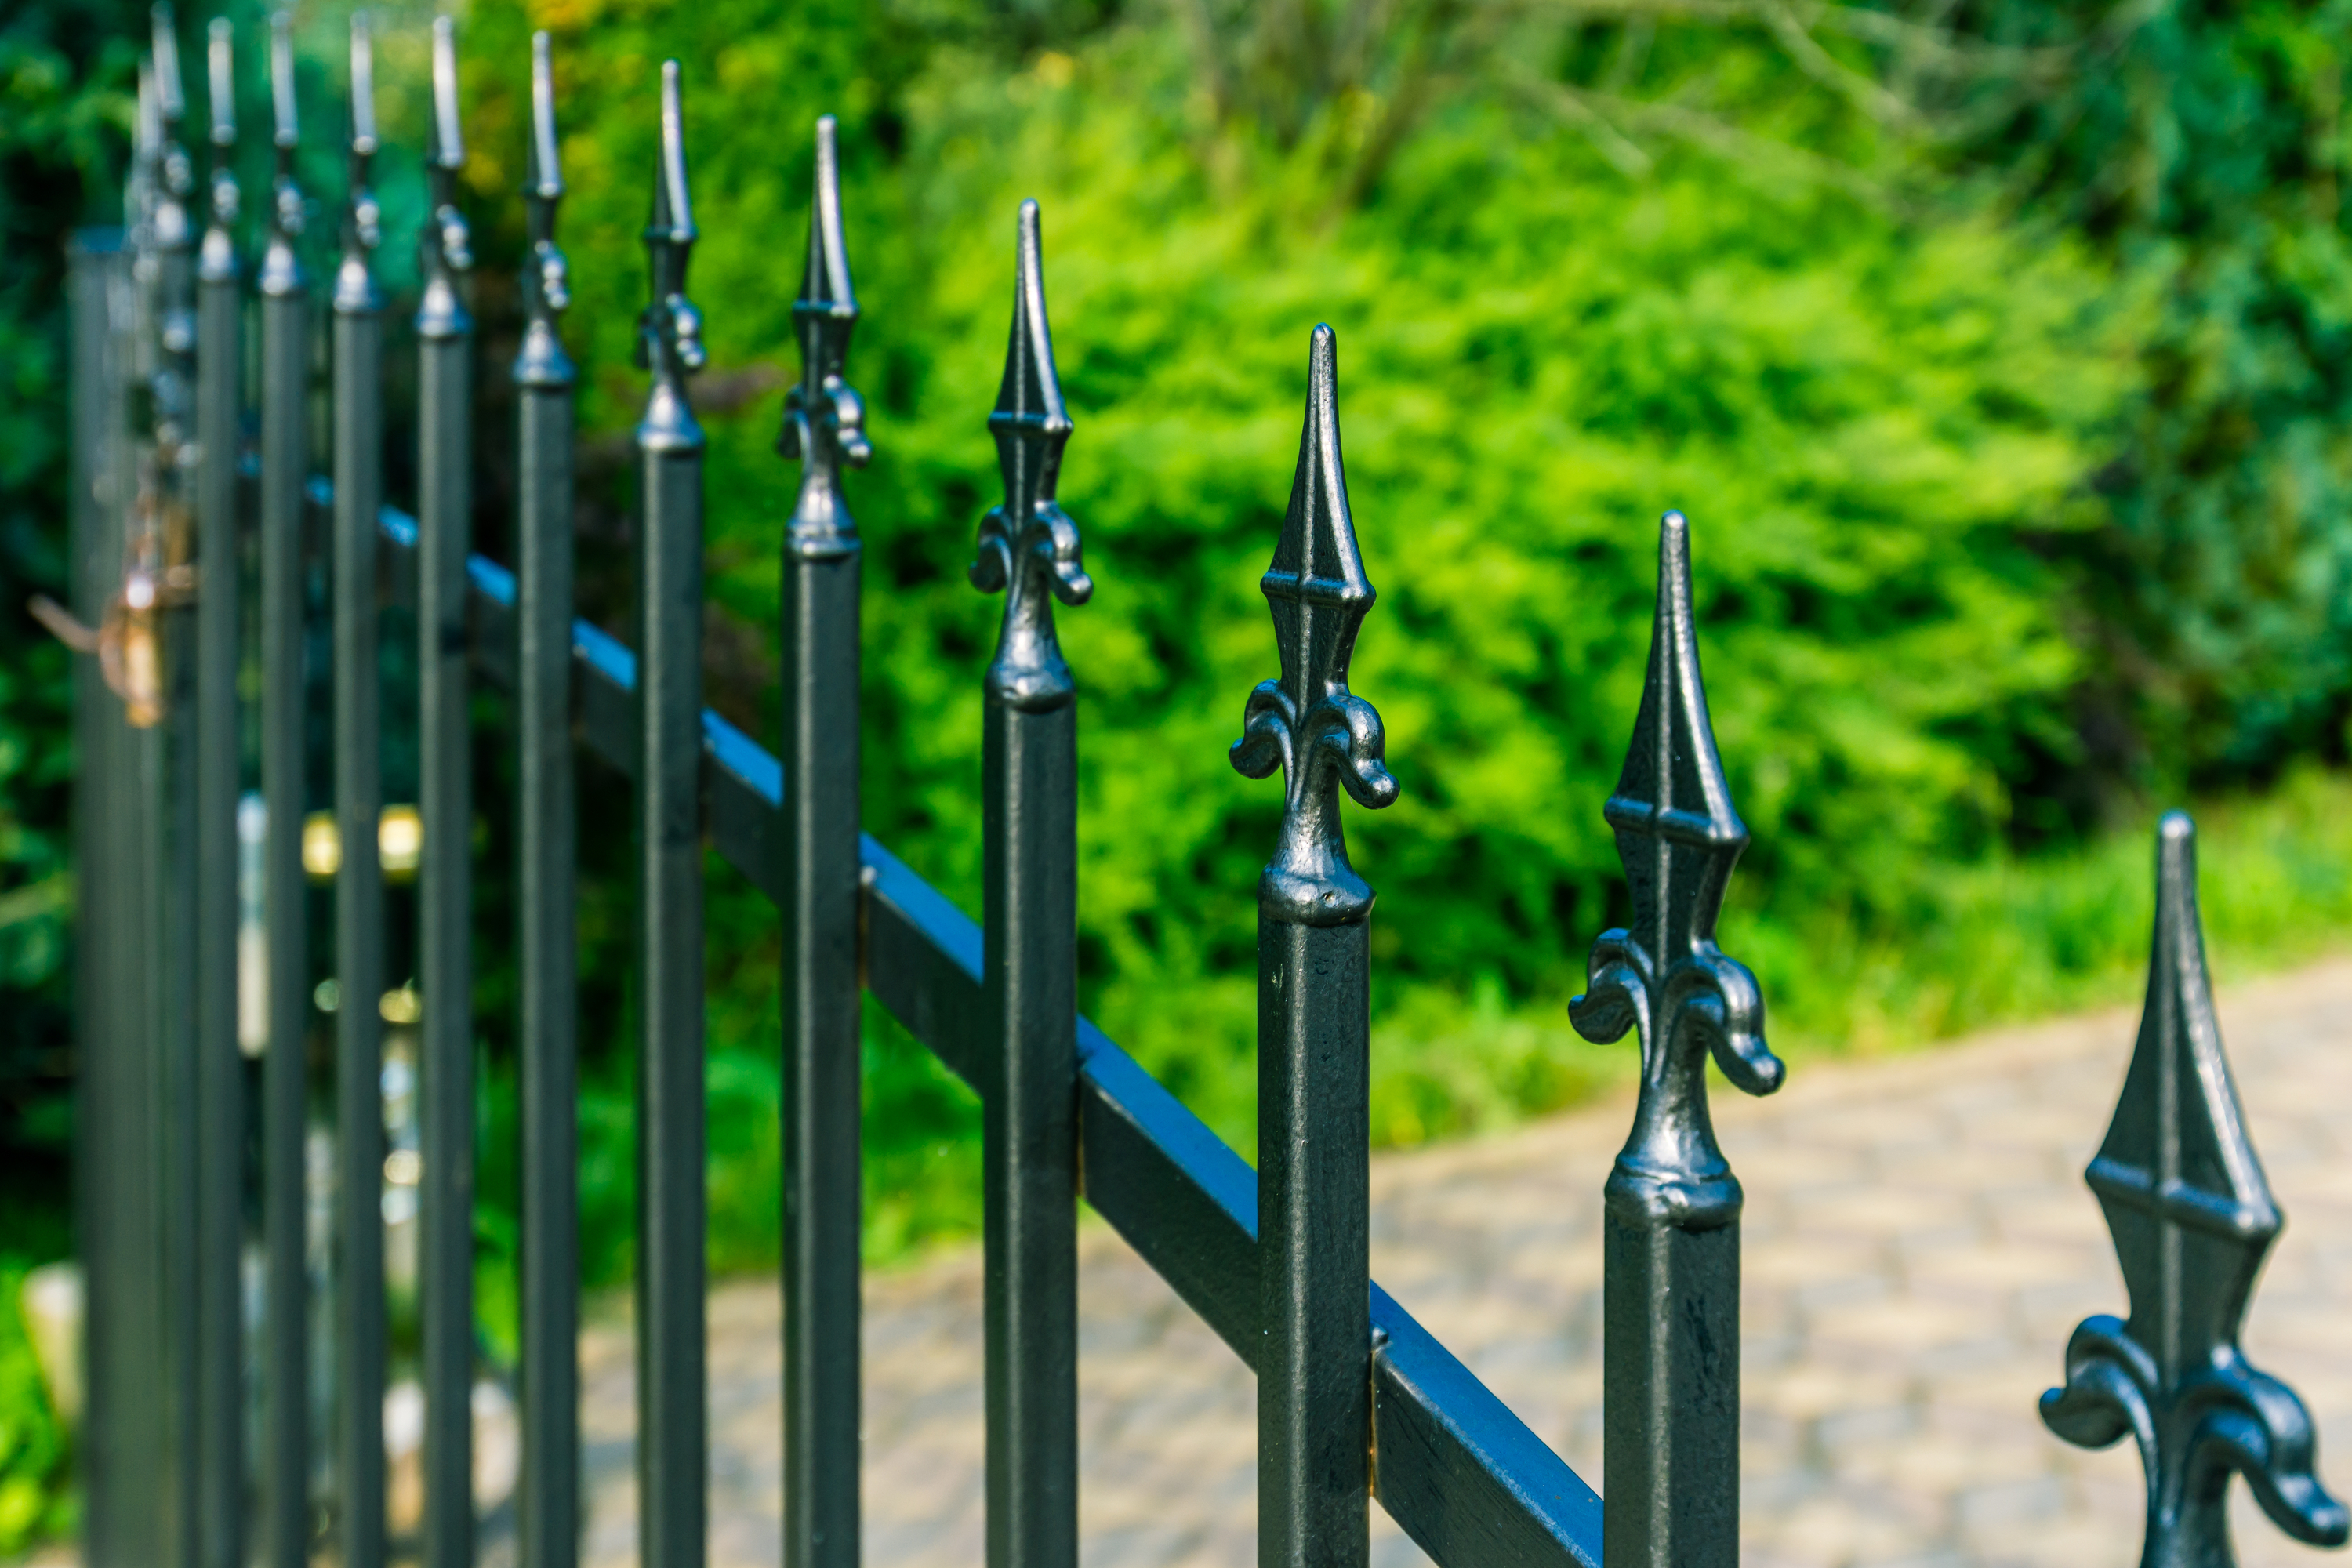 iron gates | iron | gates | iron gate designs | gate designs | design | home design | iron design | iron fence 